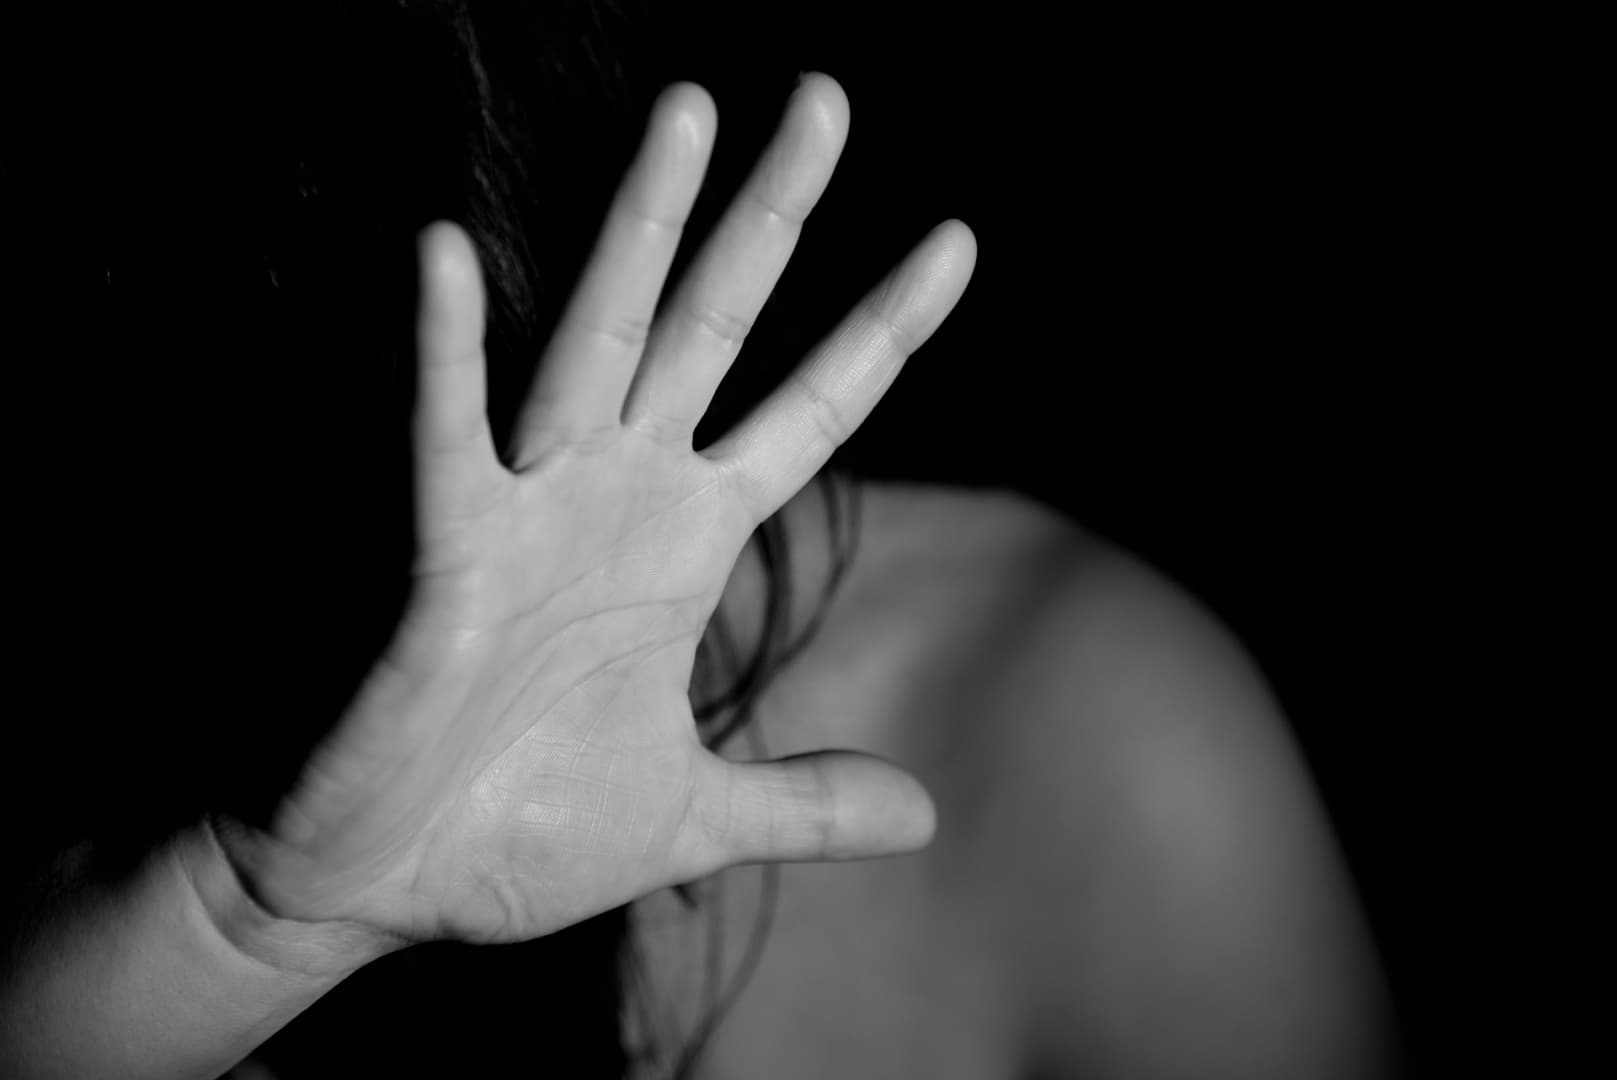 BORZALOM: Megerőszakoltak egy 15 éves lányt, halottnak tetette magát, hogy megmeneküljön